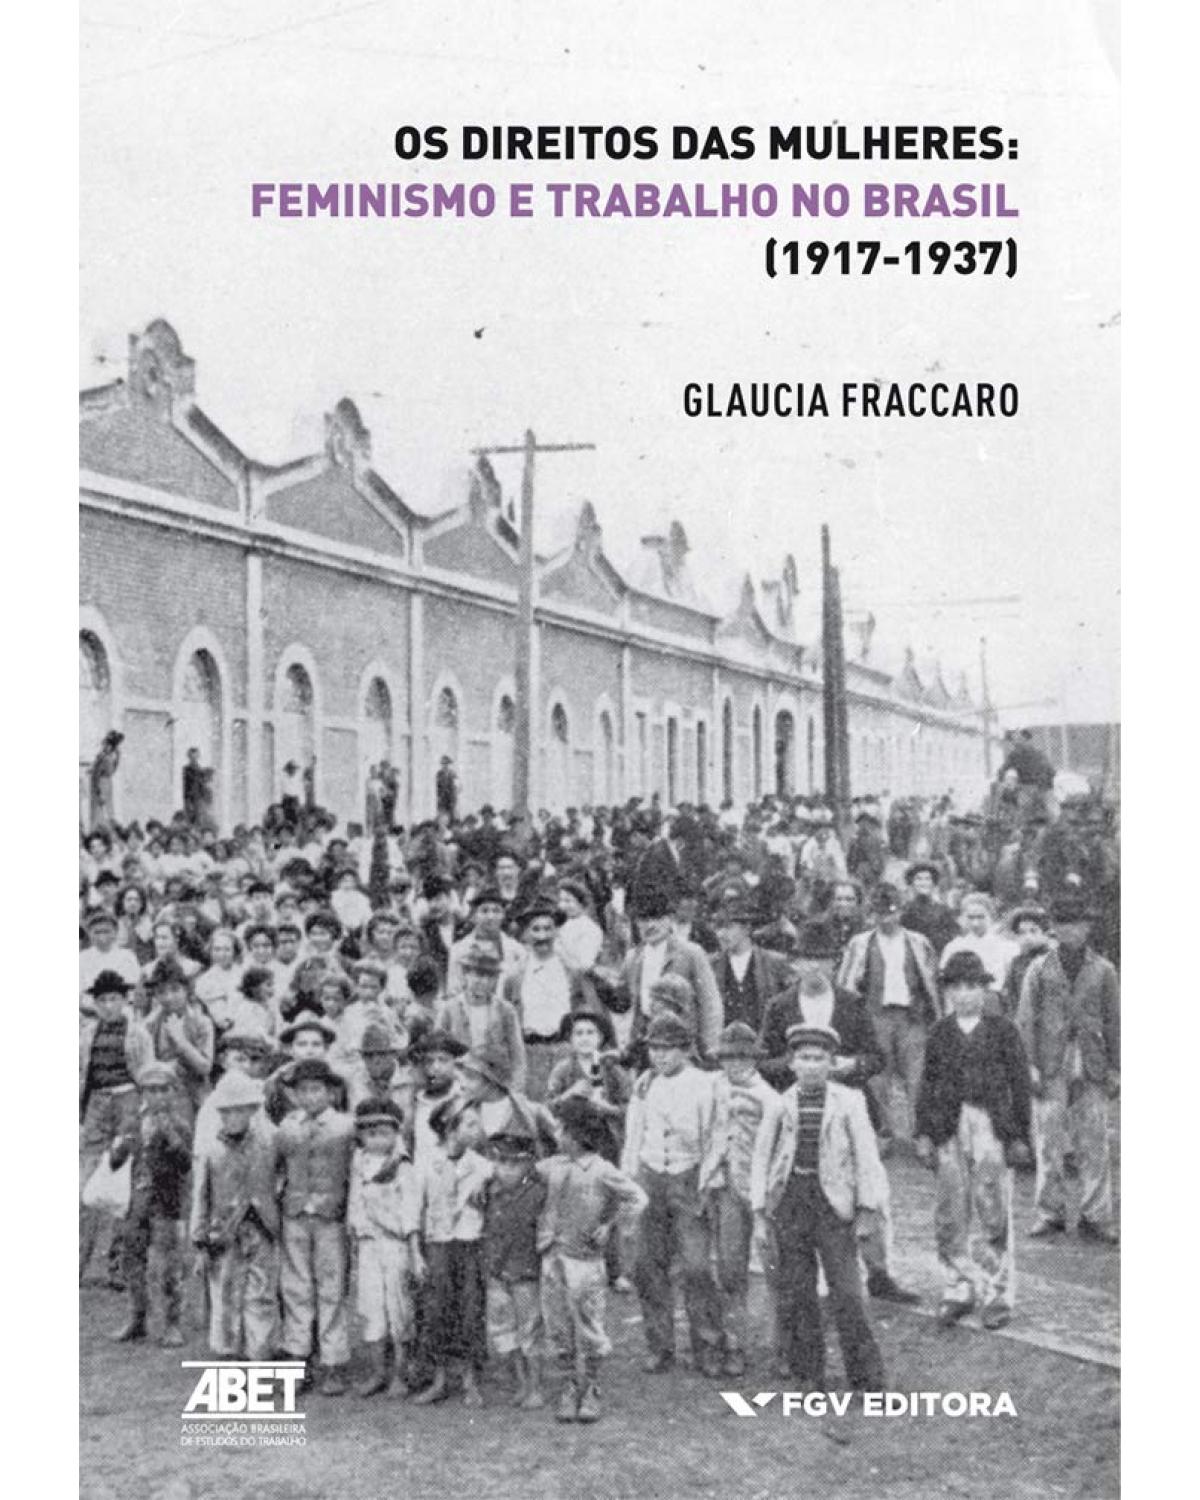 Os direitos das mulheres - Feminismo e trabalho no Brasil (1917-1937)